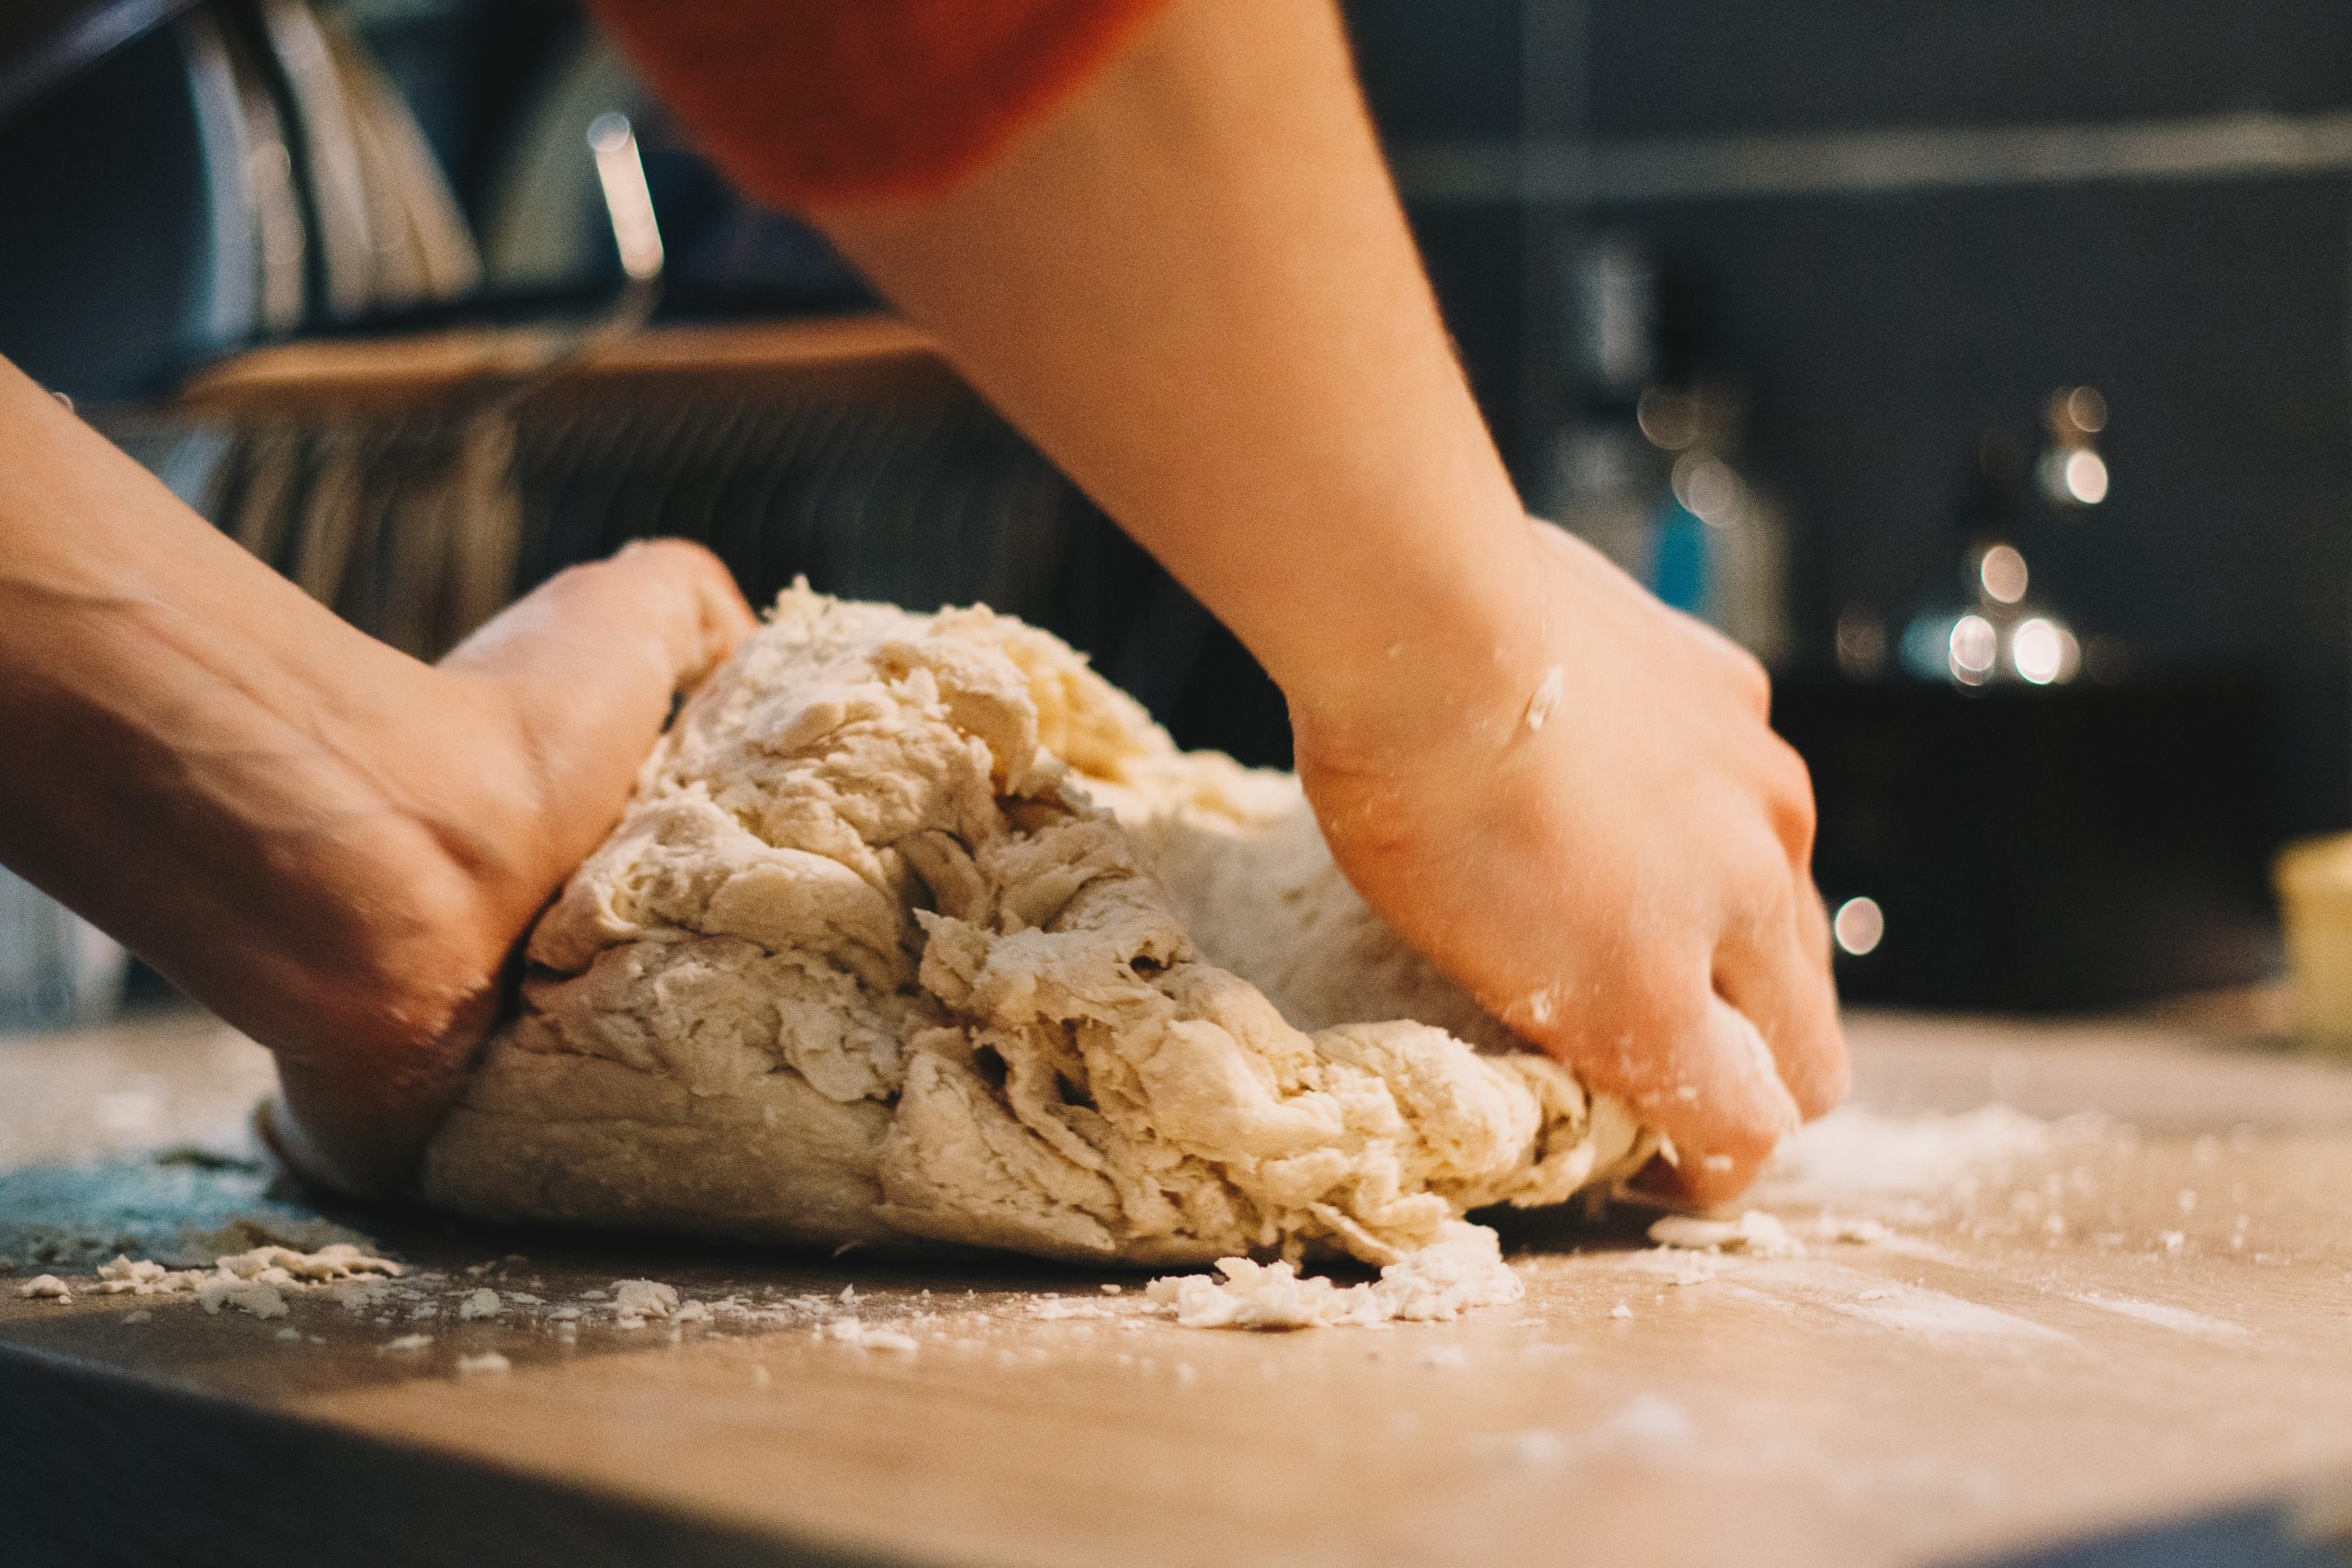 Should pizza dough be sticky?